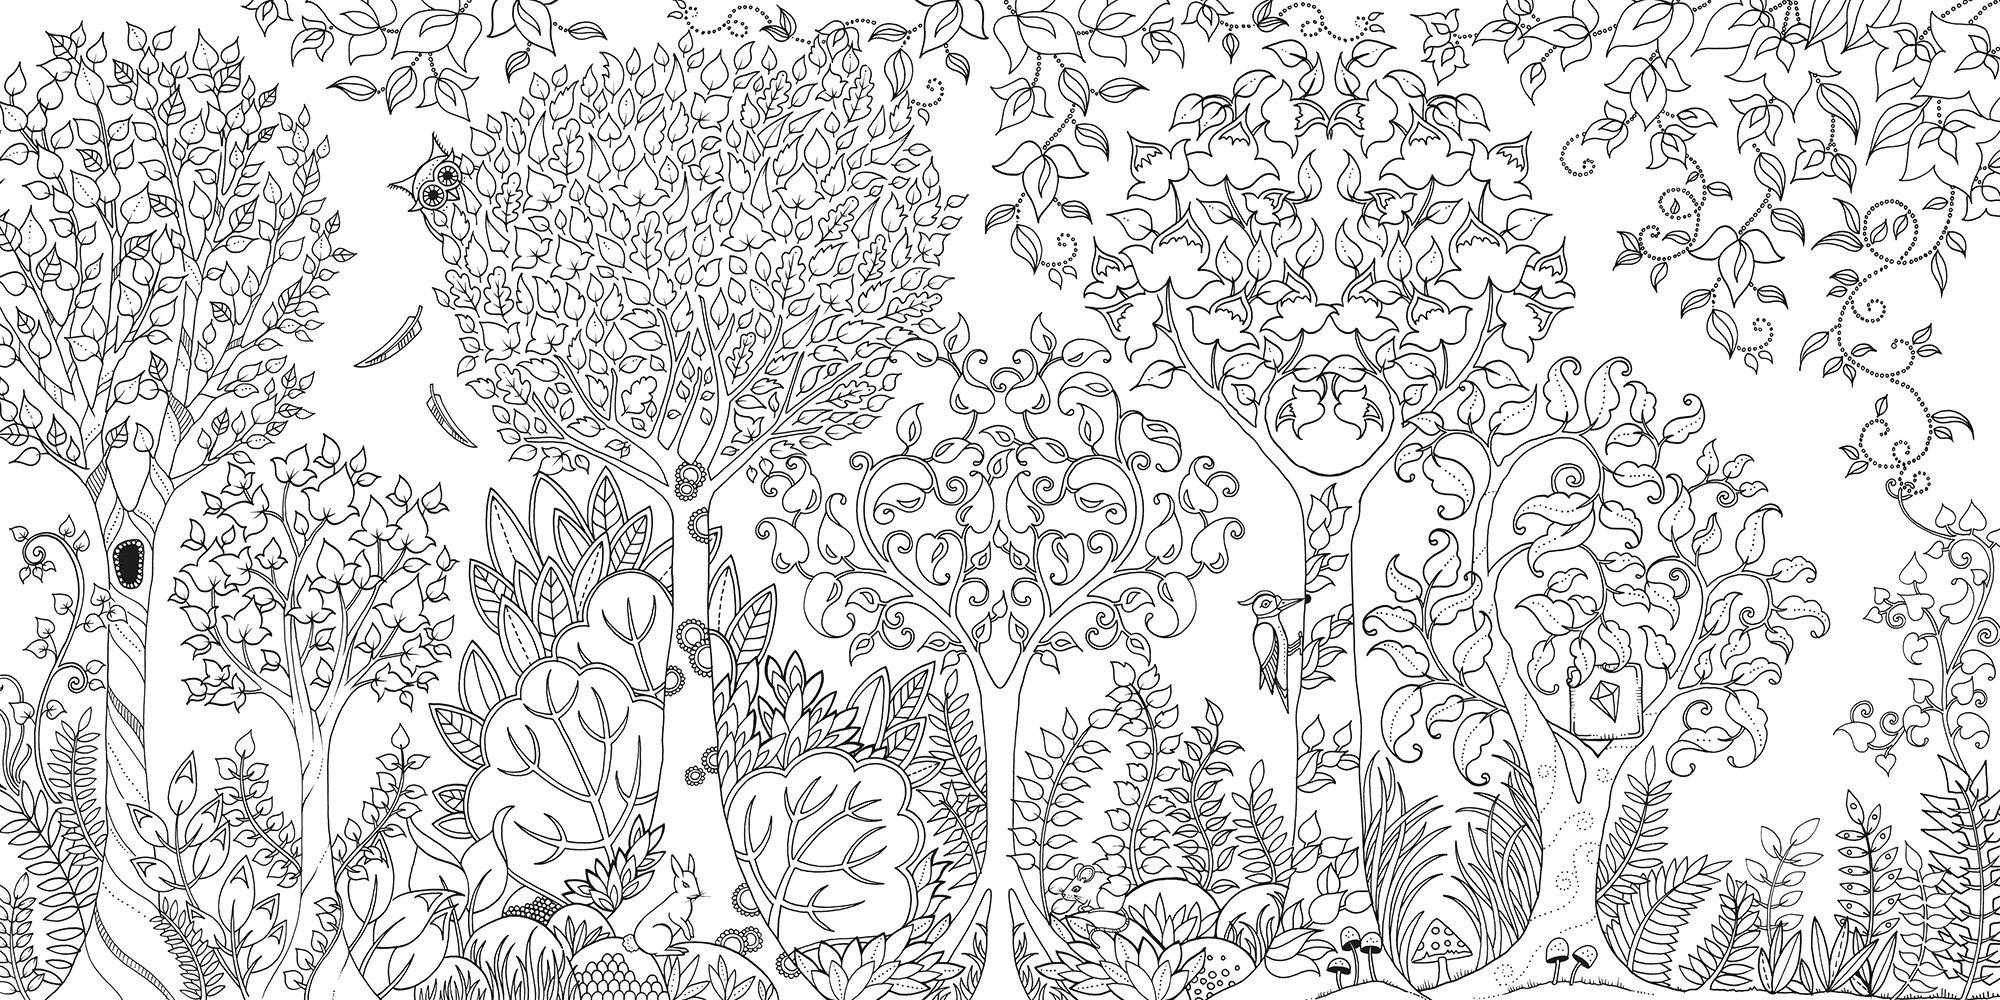 Раскраски взрослые антистресс волшебный сад, зачарованный лес, скачать бесплатно, раскраски арт-терапия для взрослых распечатать / coloring as art therapy